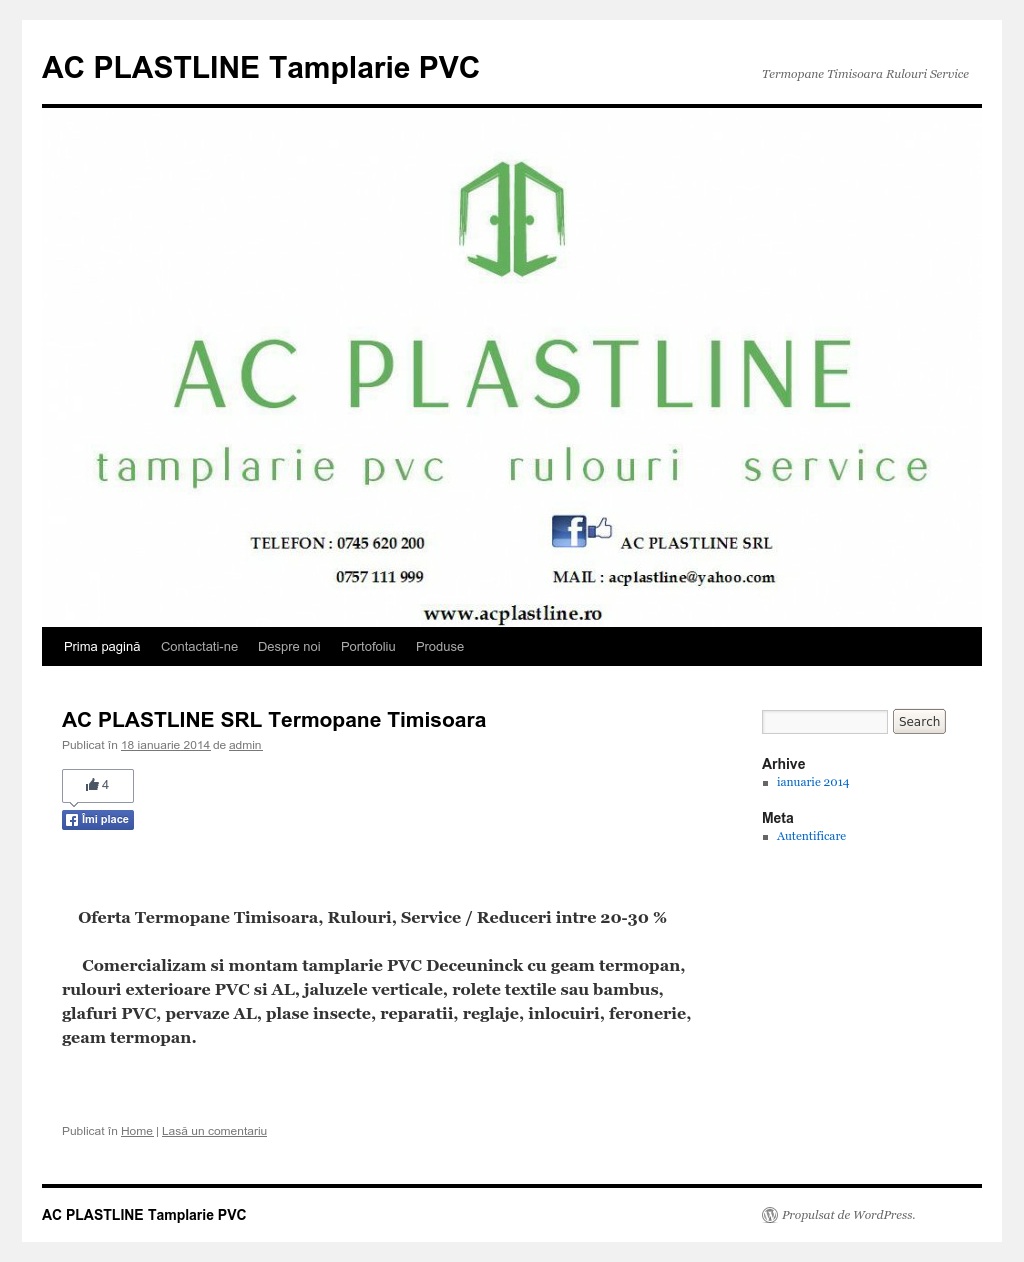 AC Plastline